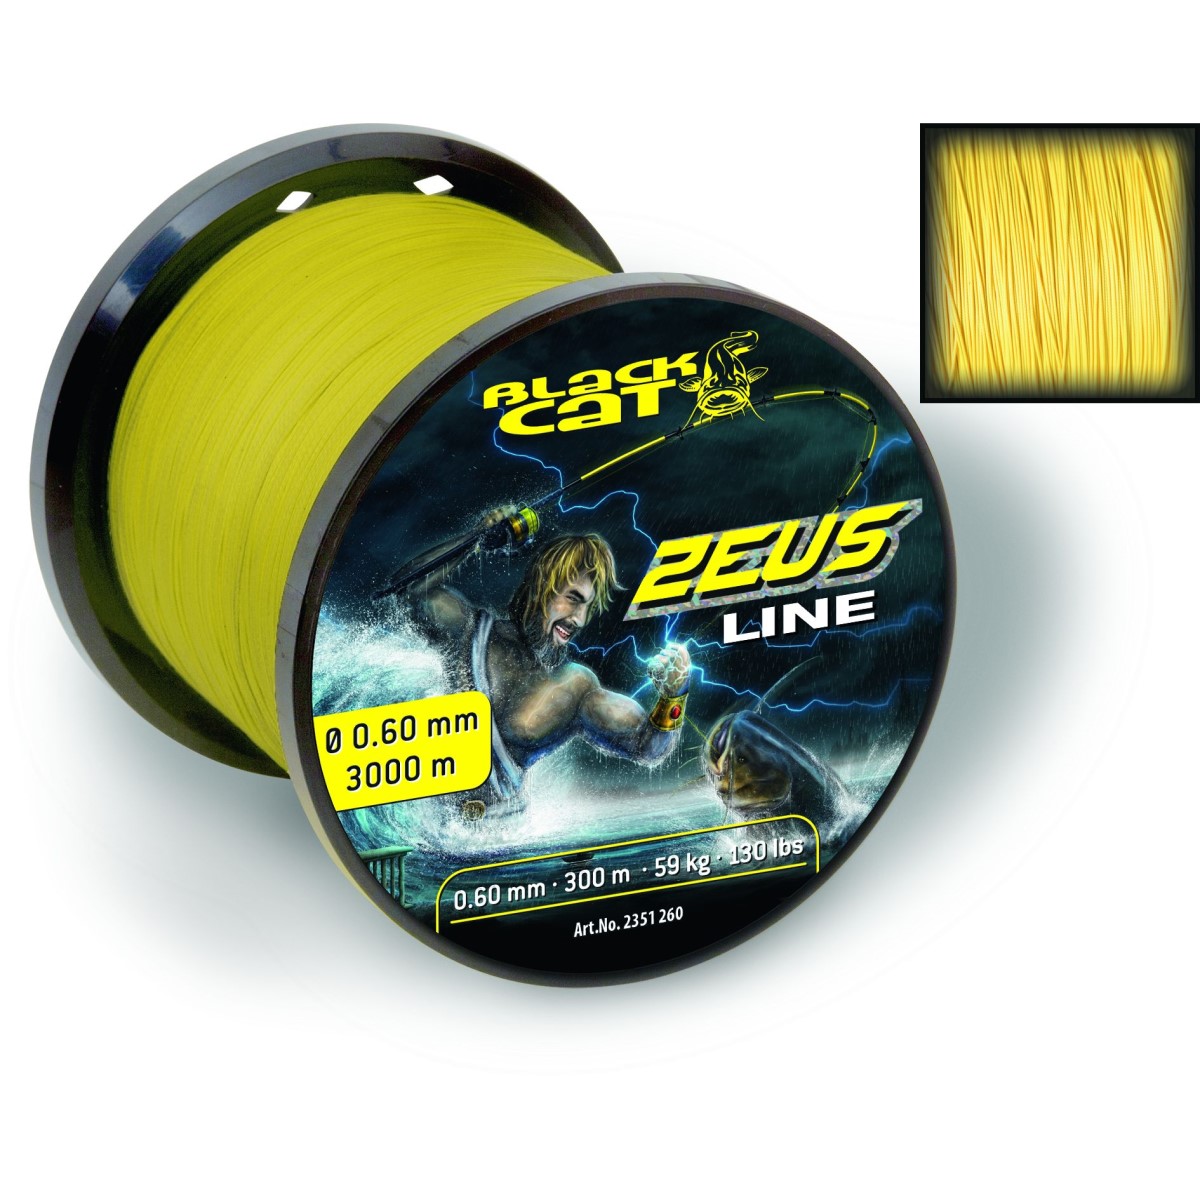 Плетено влакно за сом 0.60mm 3000m Black Cat Zeus Line Yellow